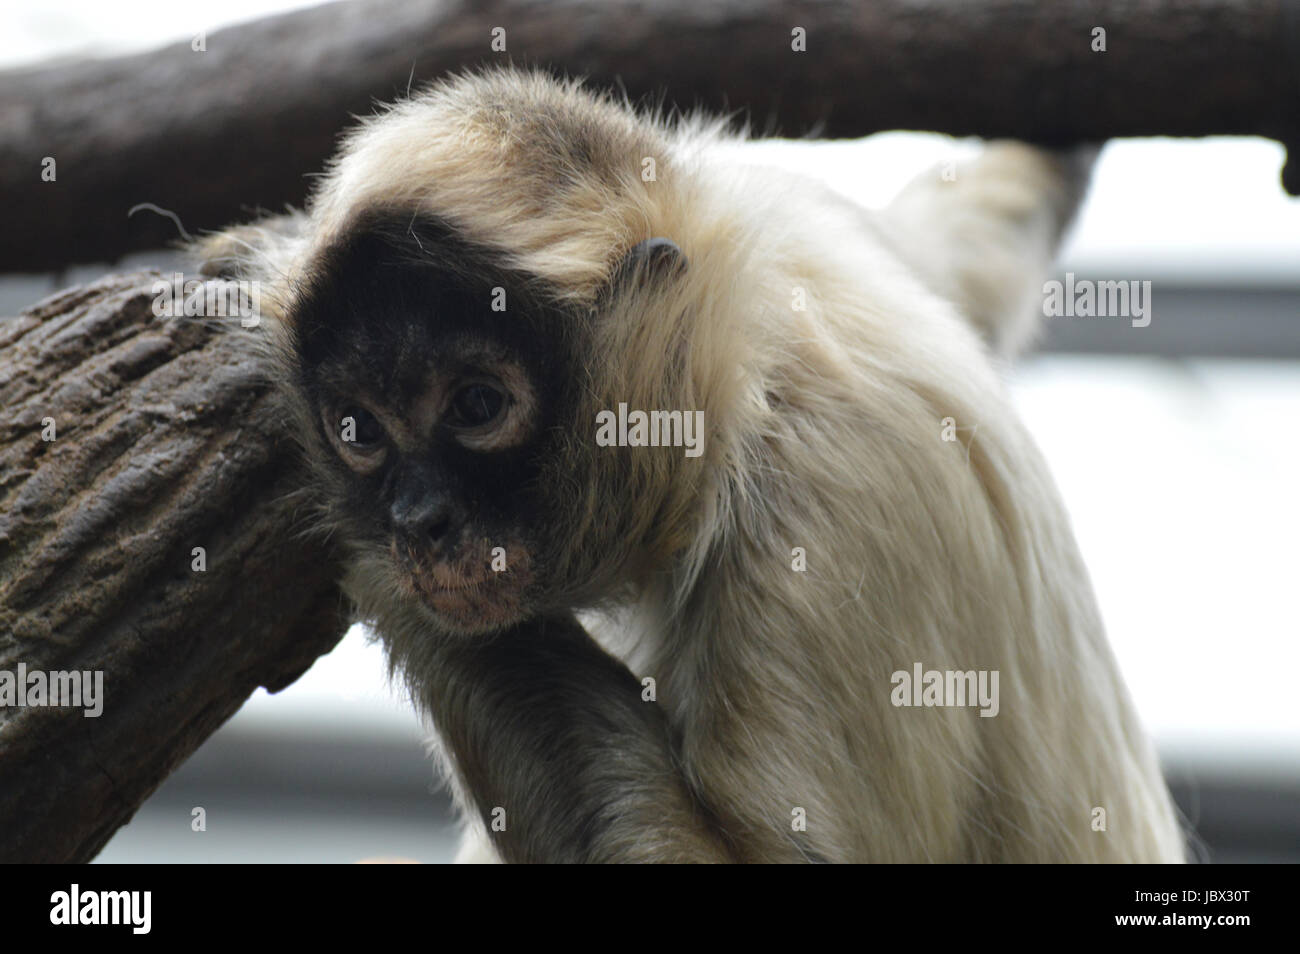 Spider monkey Foto Stock